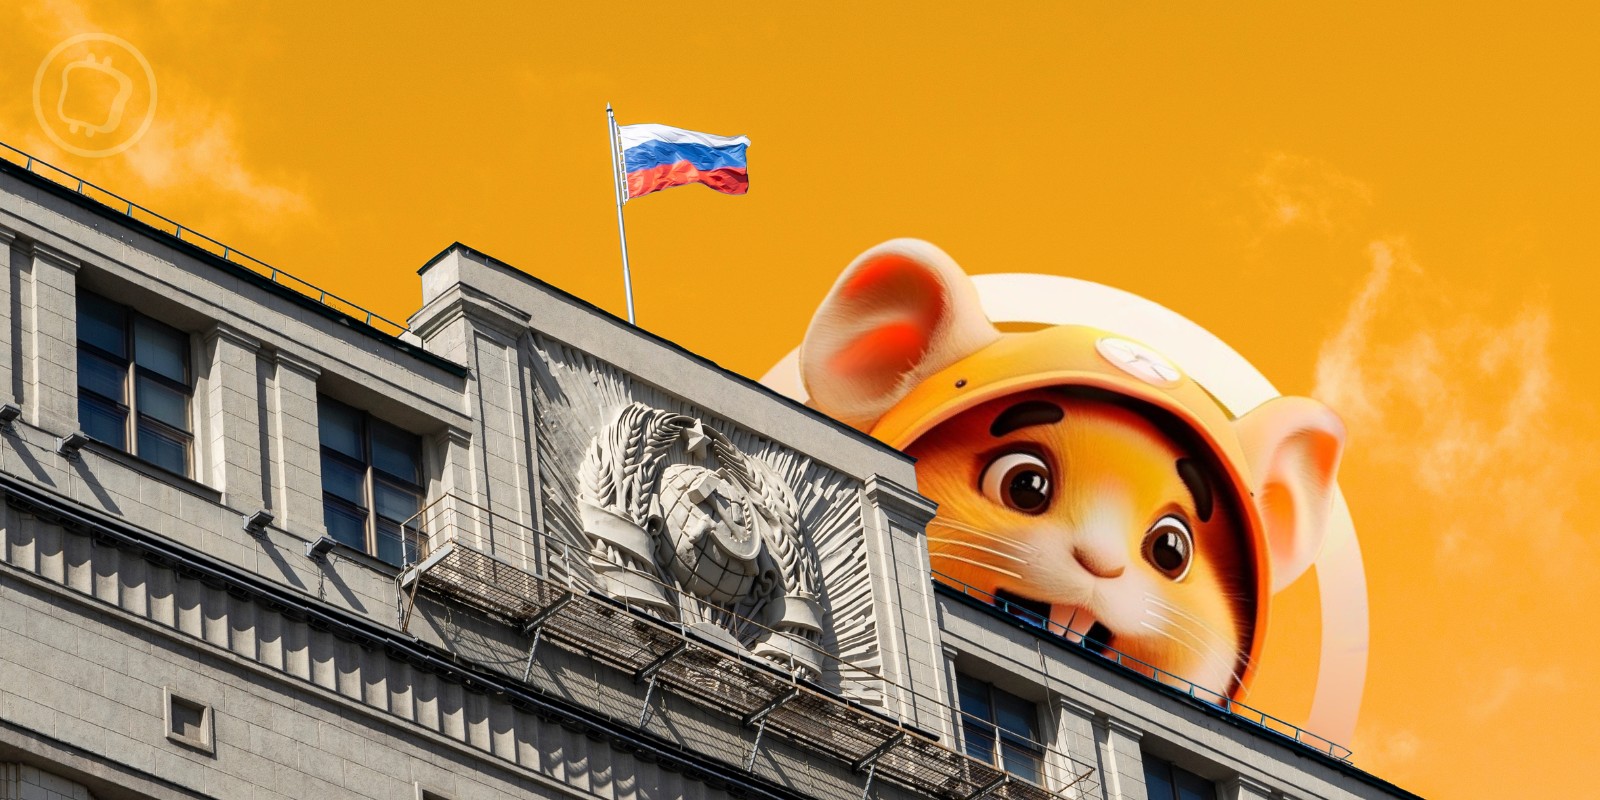 Hamster Kombat est une « arnaque » selon le parlement de Russie